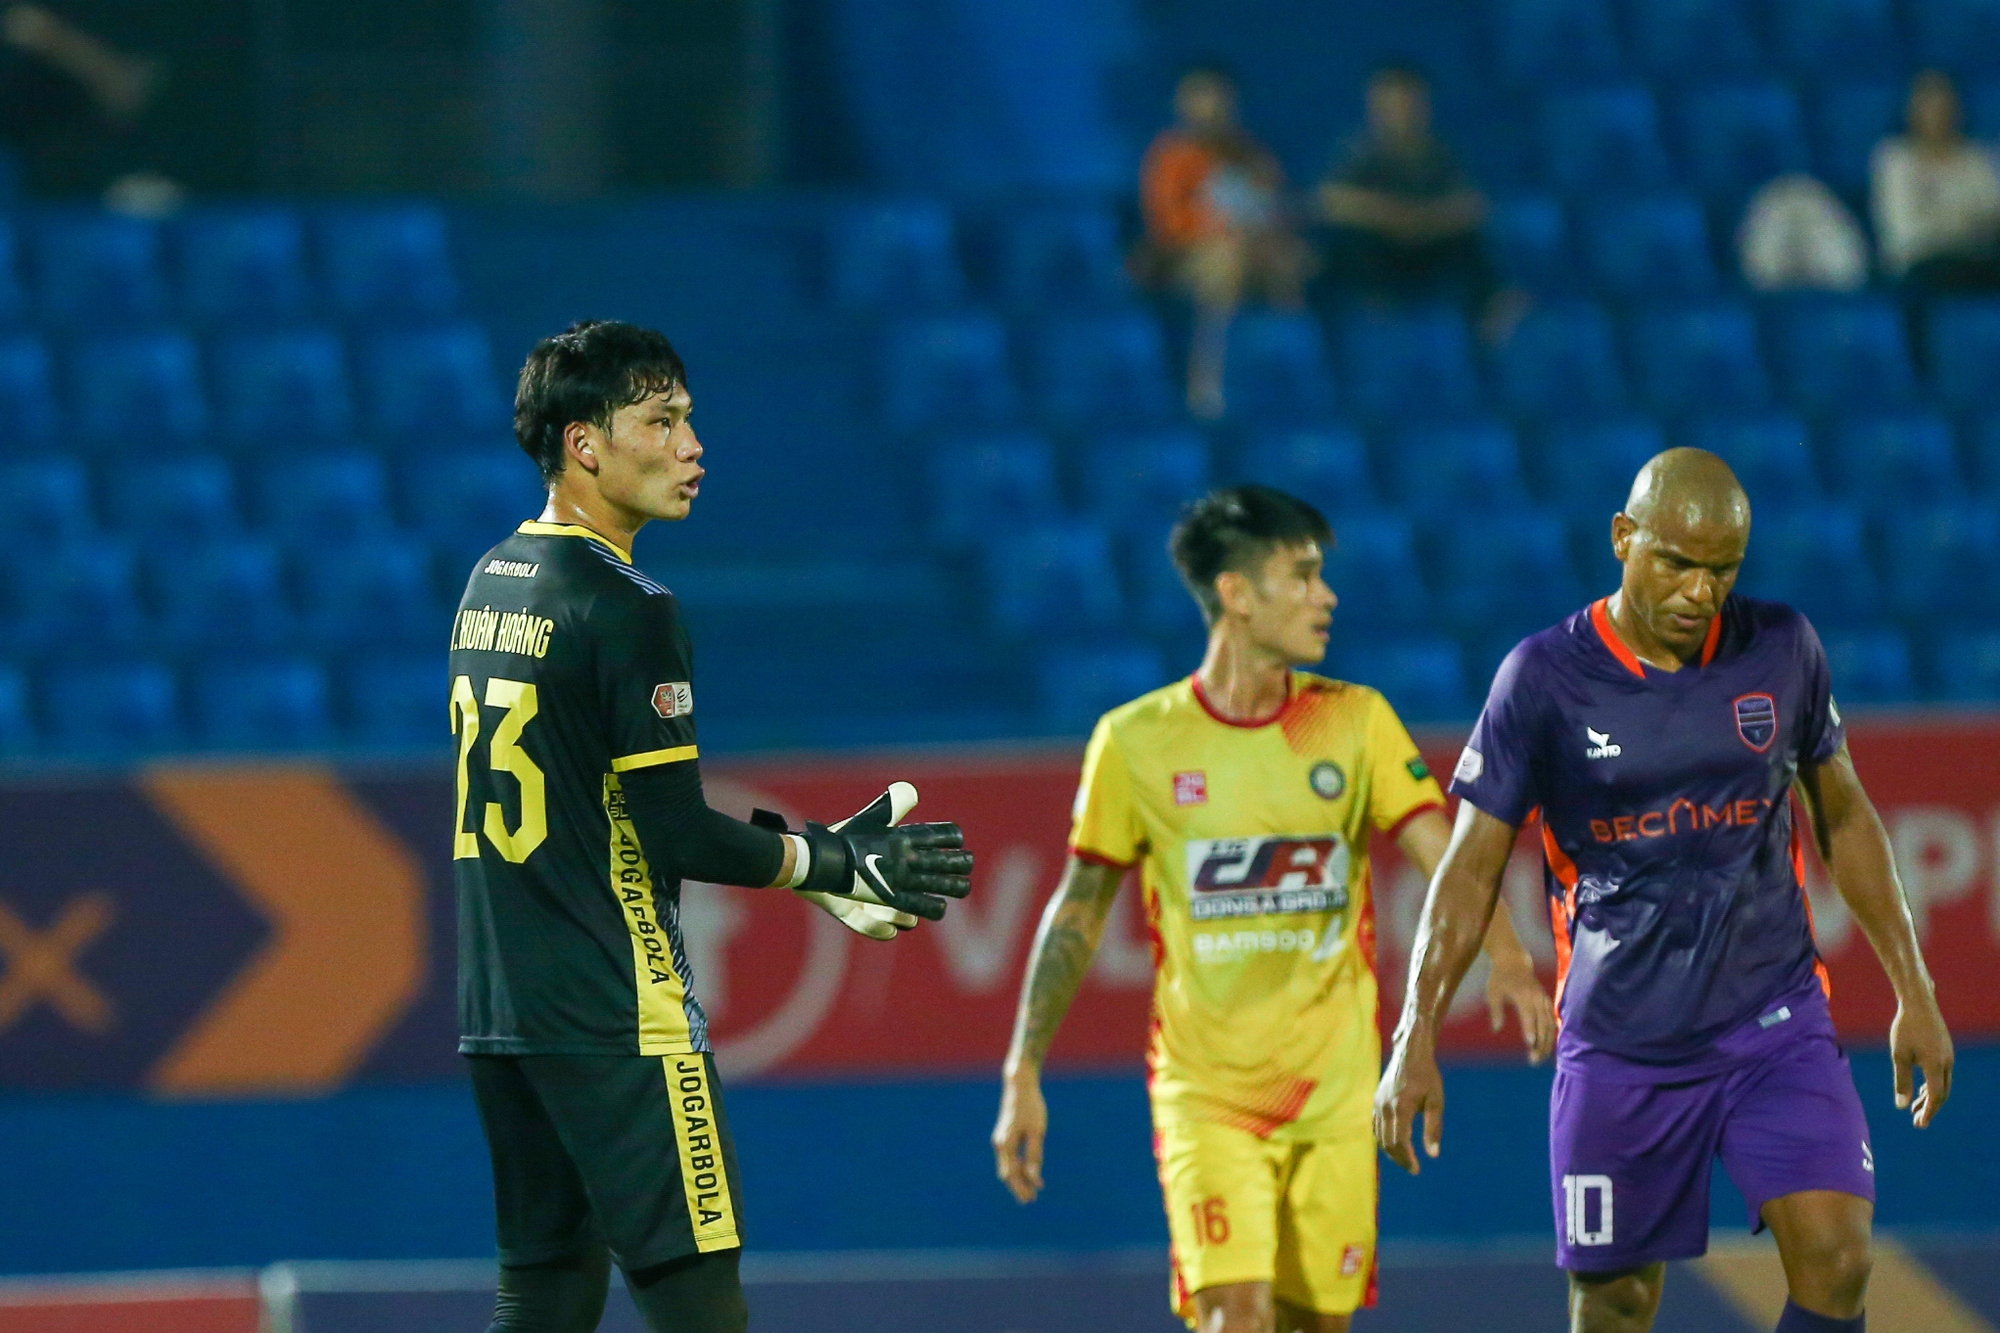 CLB Thanh Hóa: Tuyển thủ U23 Việt Nam dính chấn thương, khiến đội nhà thua trận - Ảnh 1.